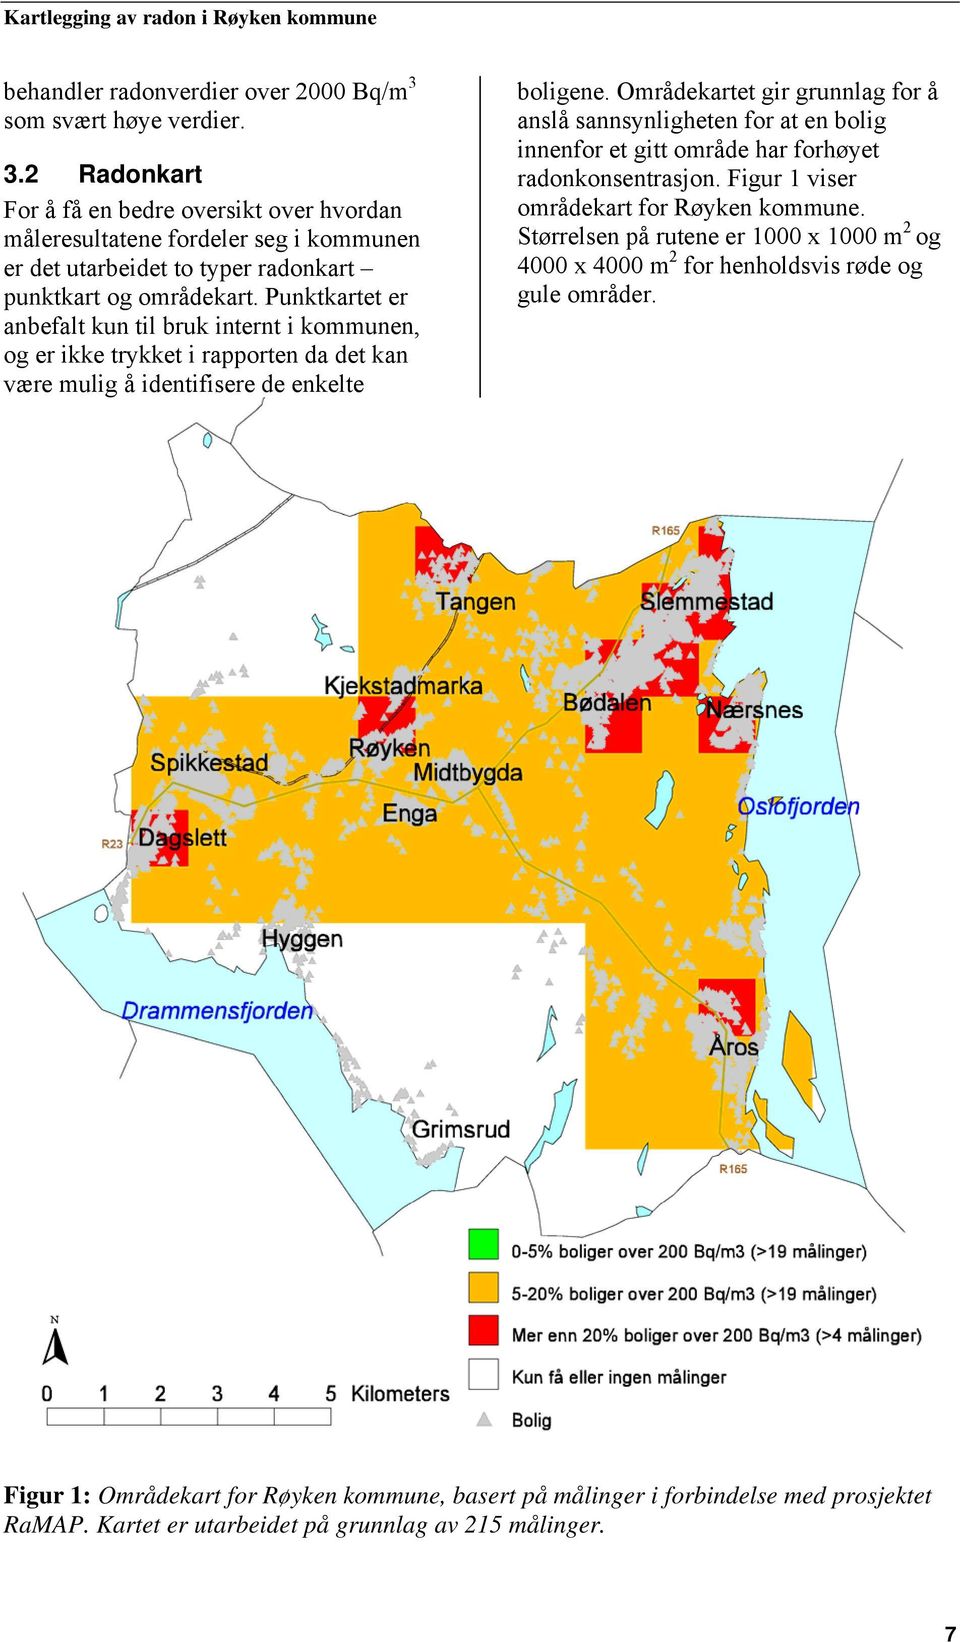 Områdekartet gir grunnlag for å anslå sannsynligheten for at en bolig innenfor et gitt område har forhøyet radonkonsentrasjon. Figur 1 viser områdekart for Røyken kommune.